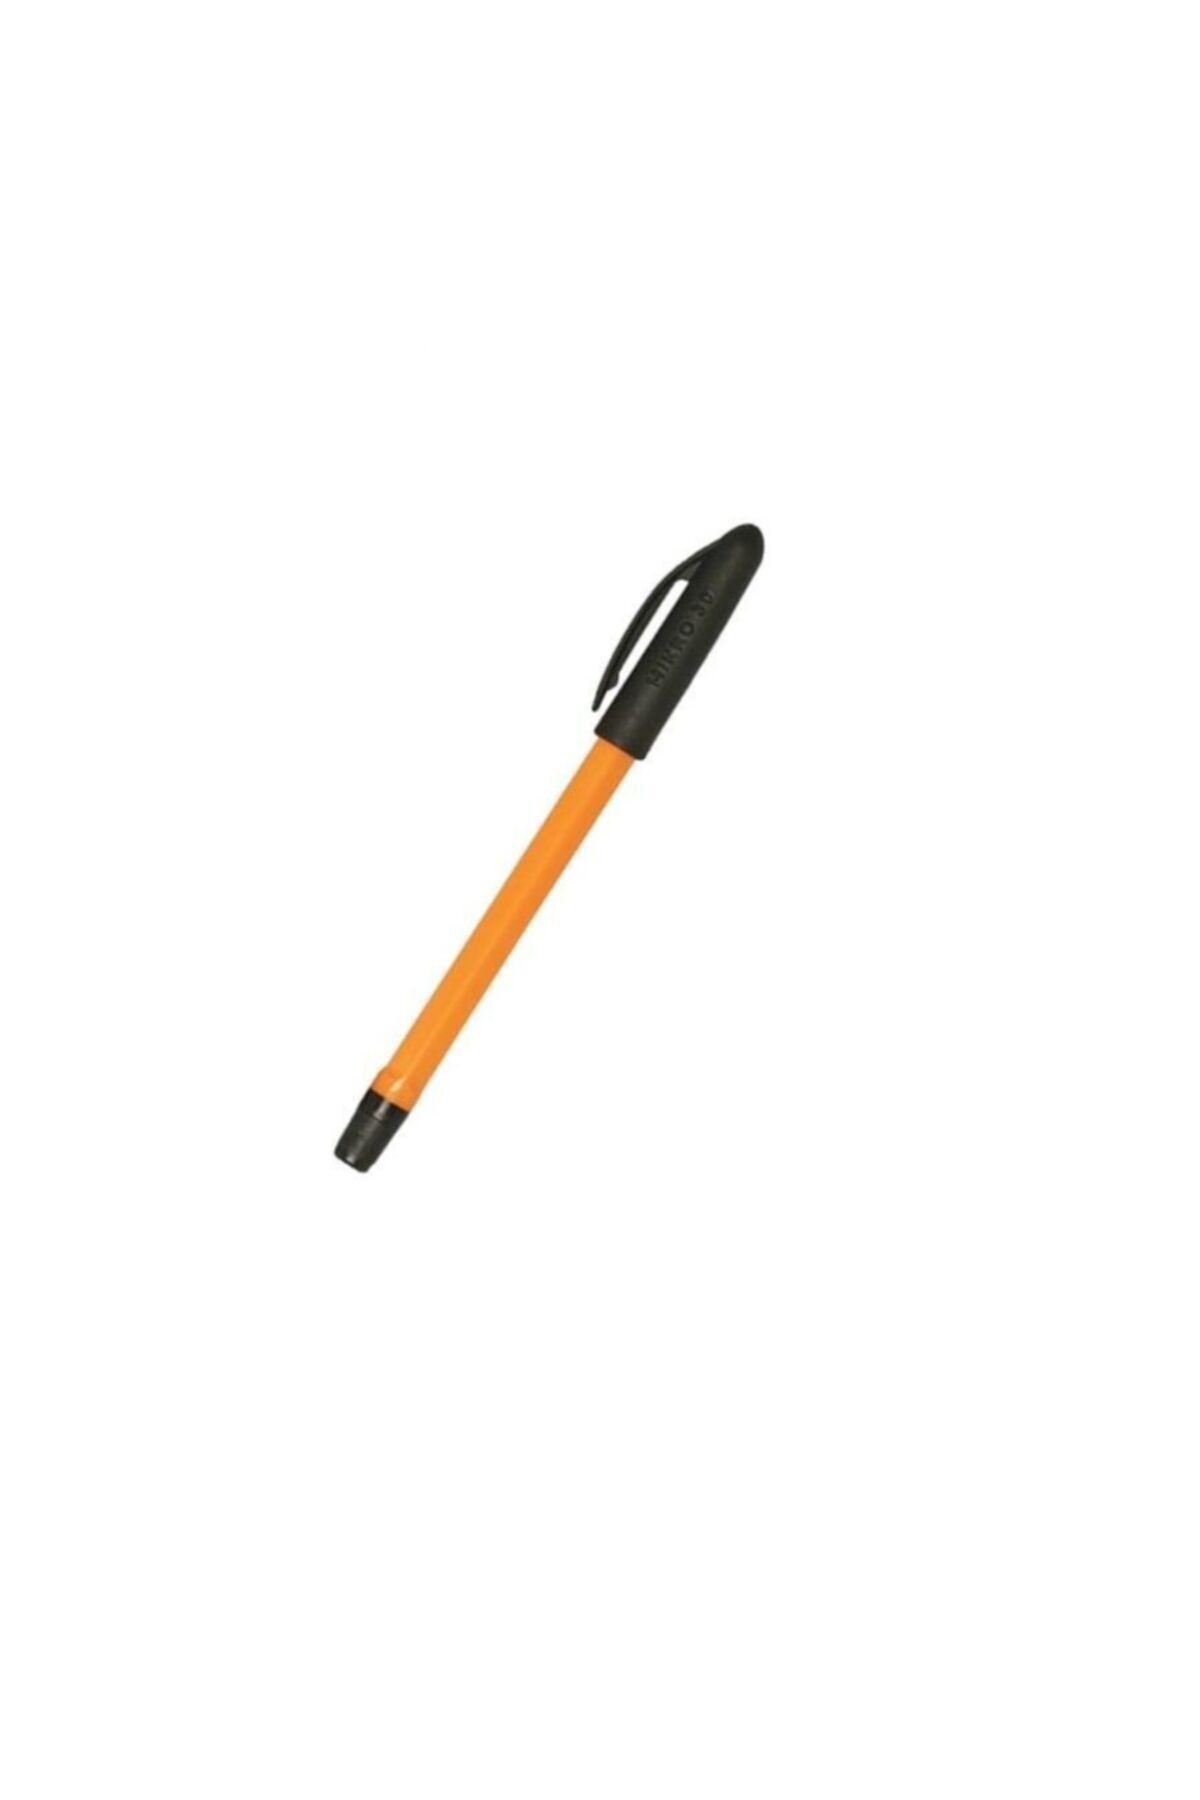 Mikro Siyah Tükenmez Kalem 1.0mm Uç Tükenmez Kalem Siyah Renk 1.0mm